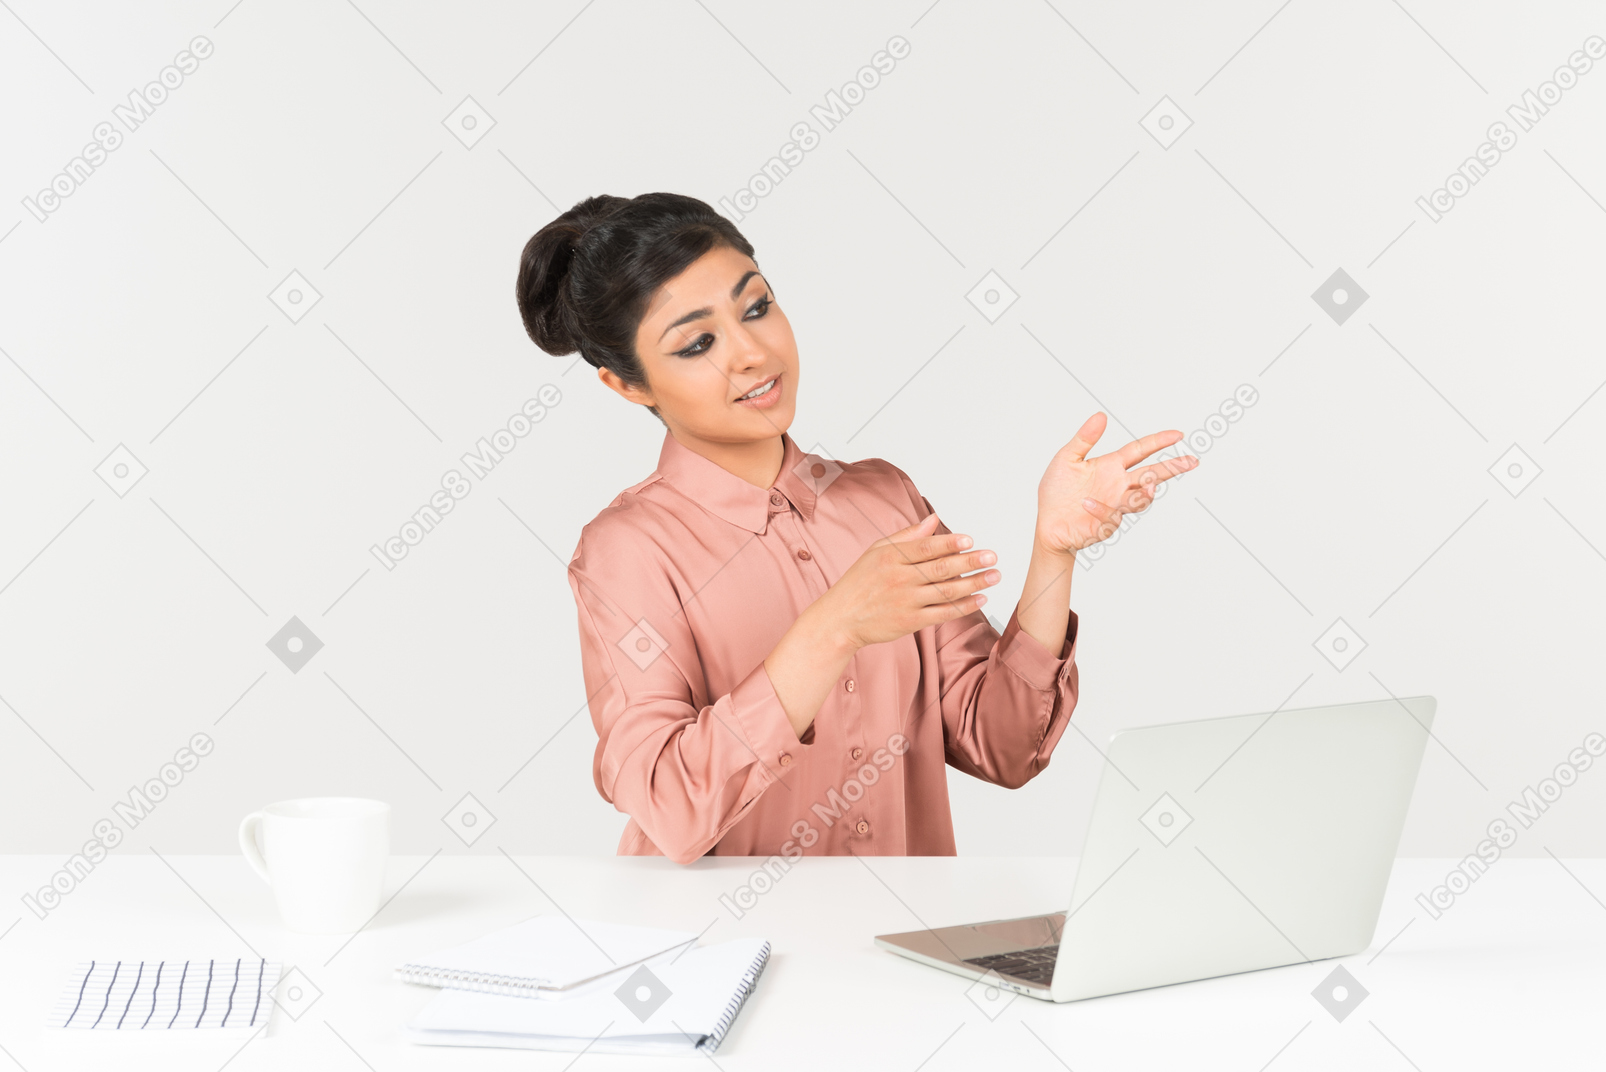 Jeune femme indienne assise au bureau et pointant du doigt